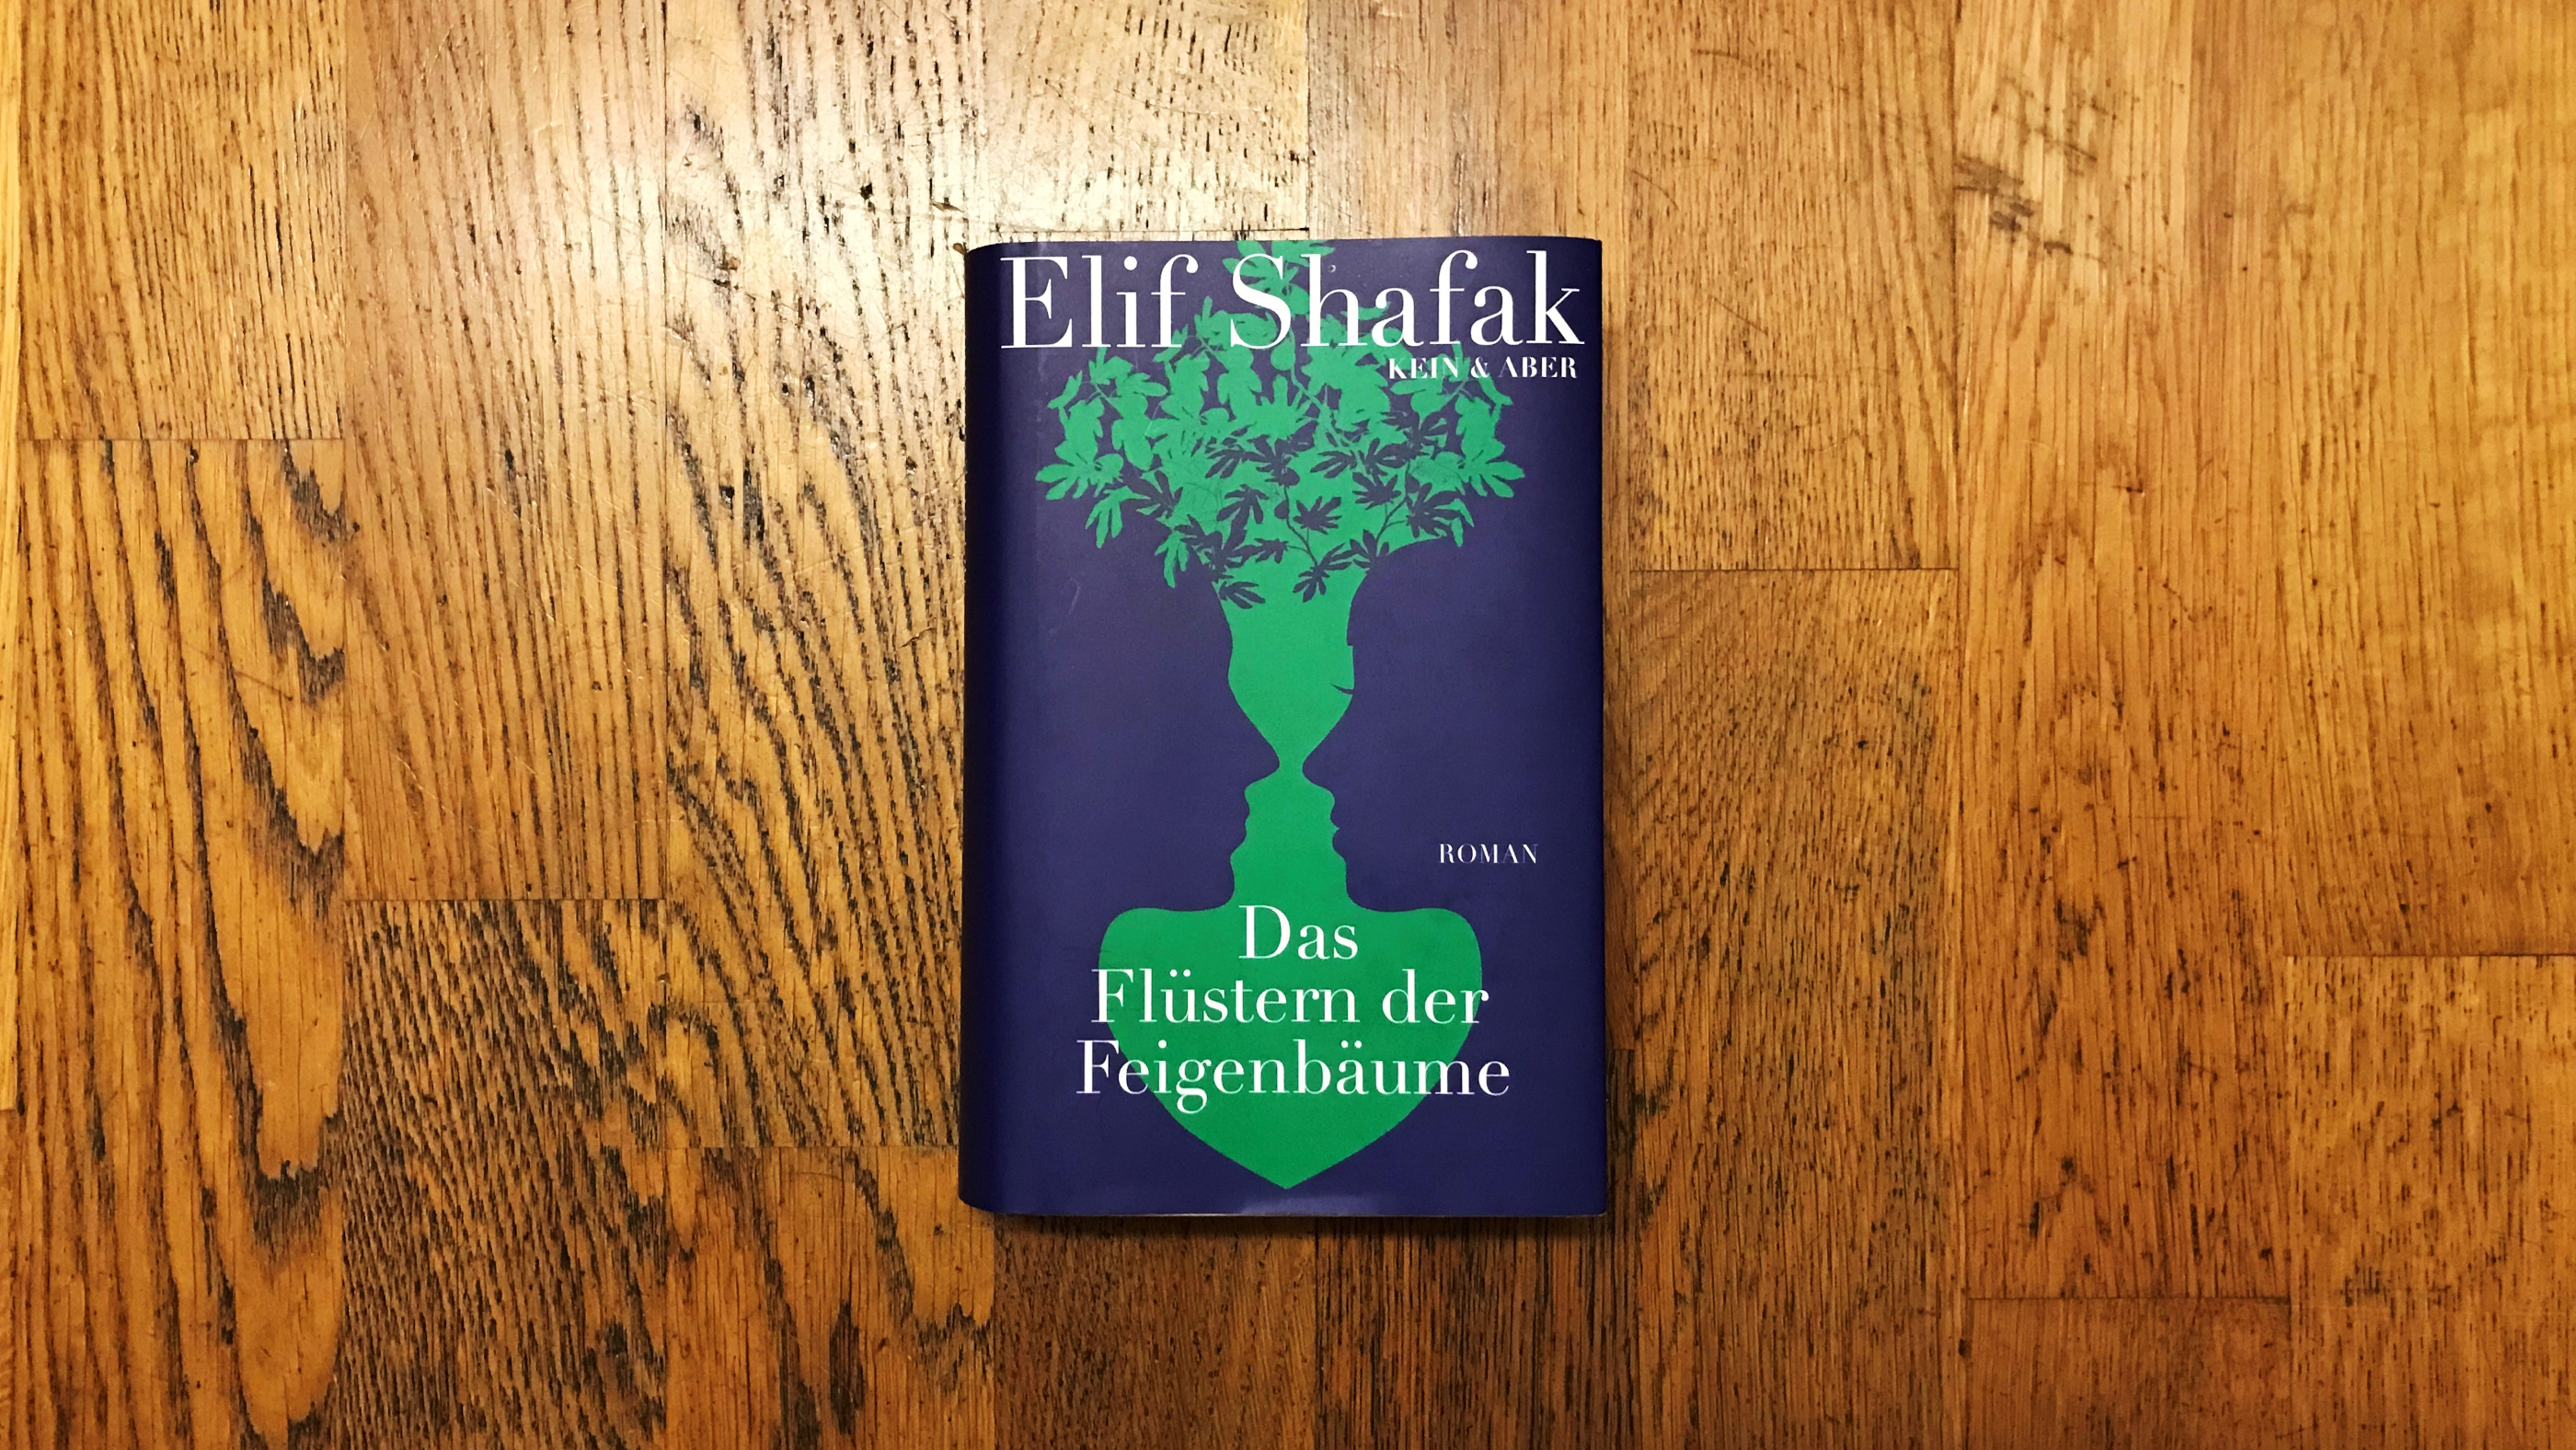 Buchcover "Das Flüstern der Feigenbäume".  Blaue Siluetten von Gesichtern formen grüne Pflanze